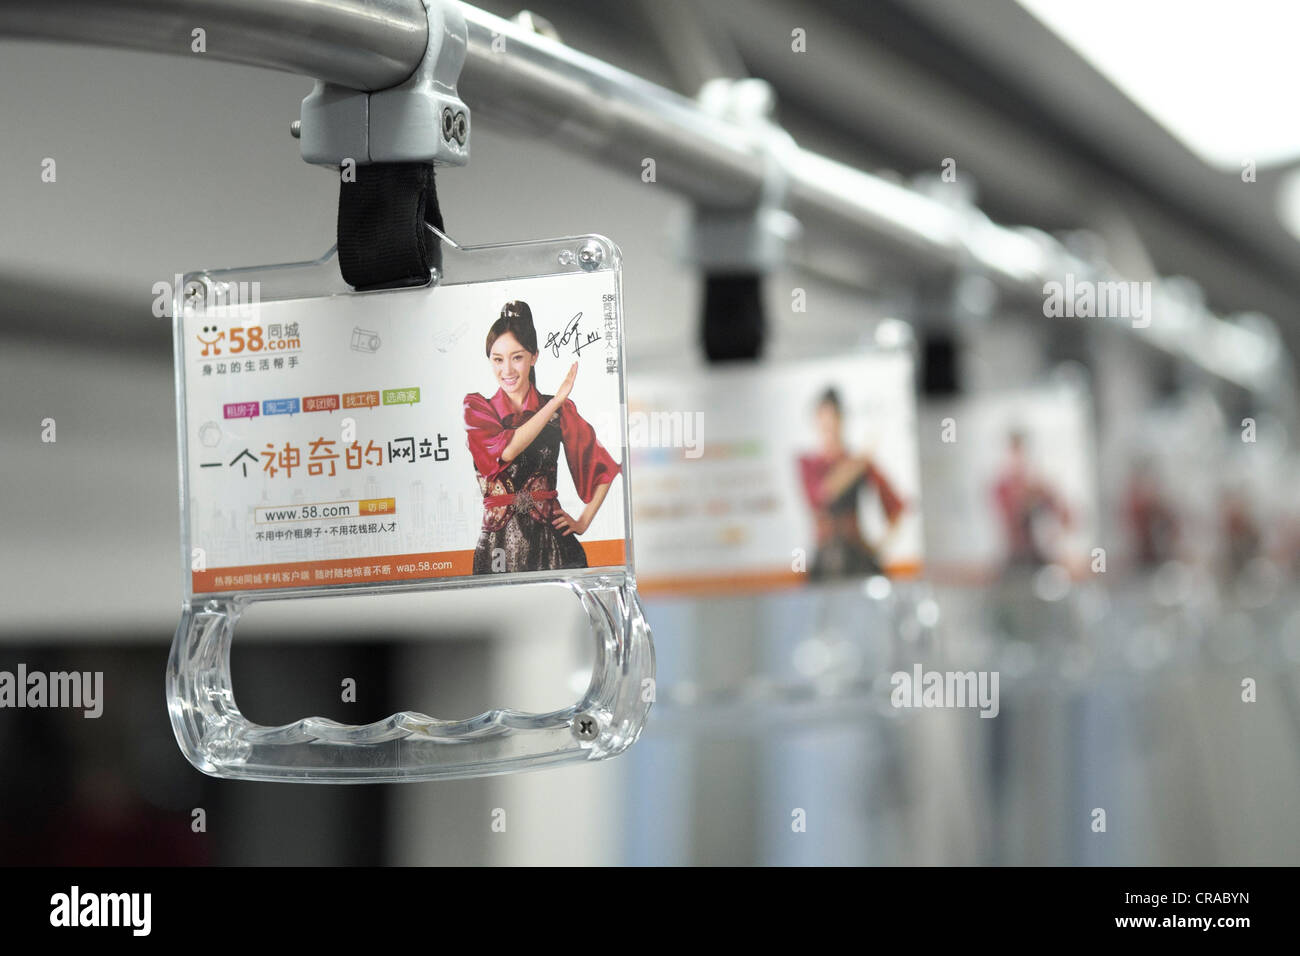 Dettaglio della pubblicità sul passeggero laccio da polso per il trasporto sulla metropolitana di Pechino in Cina Foto Stock